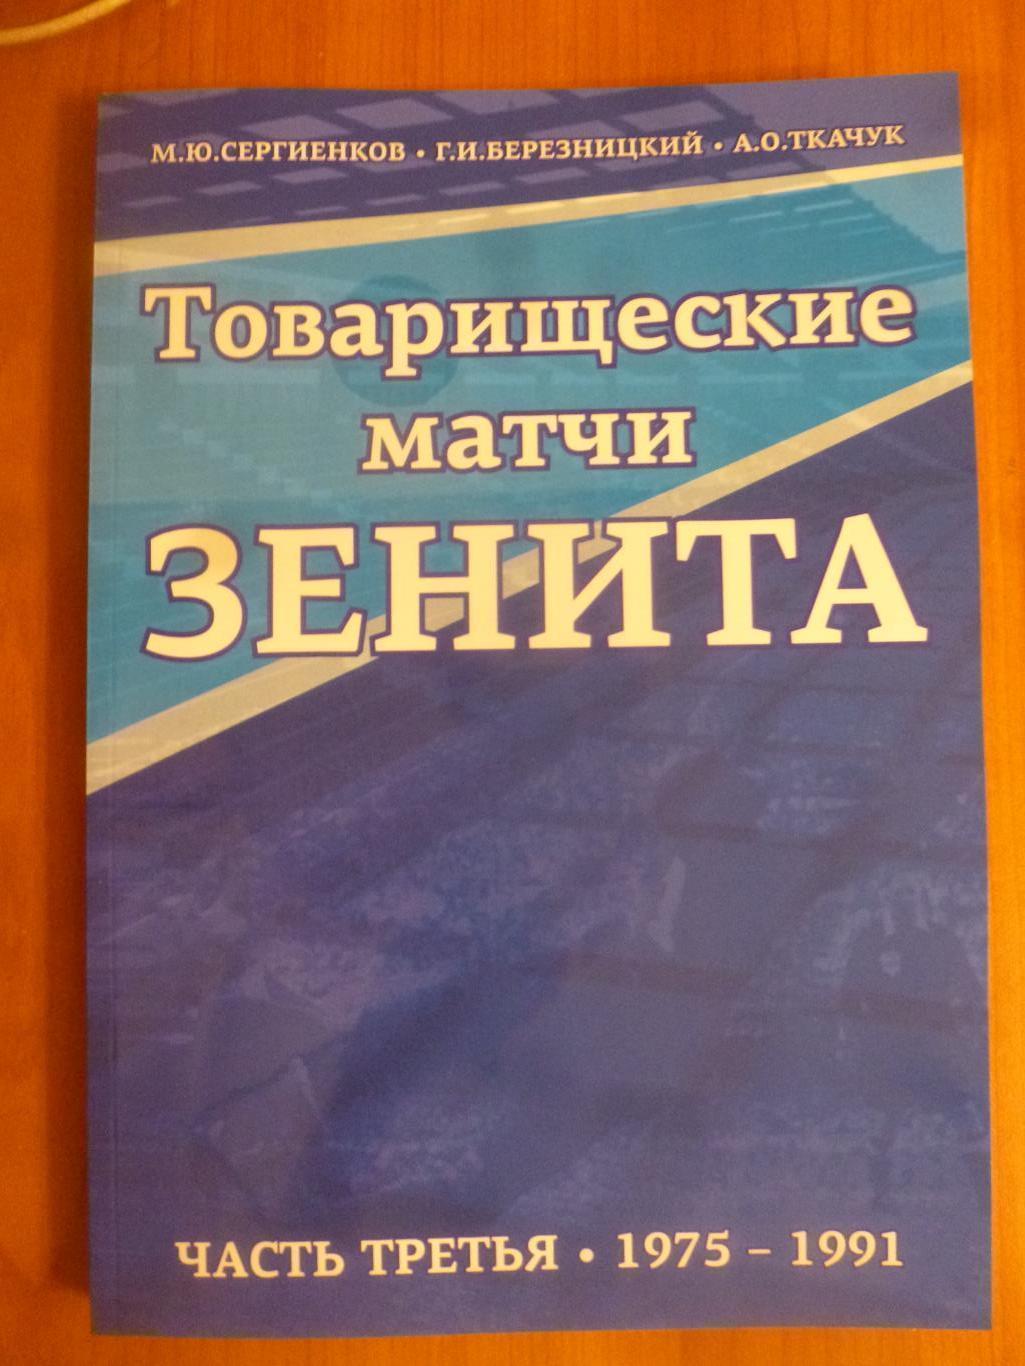 Книга Товарищеские матчи Зенита. Часть 3 (1975-1991)*.